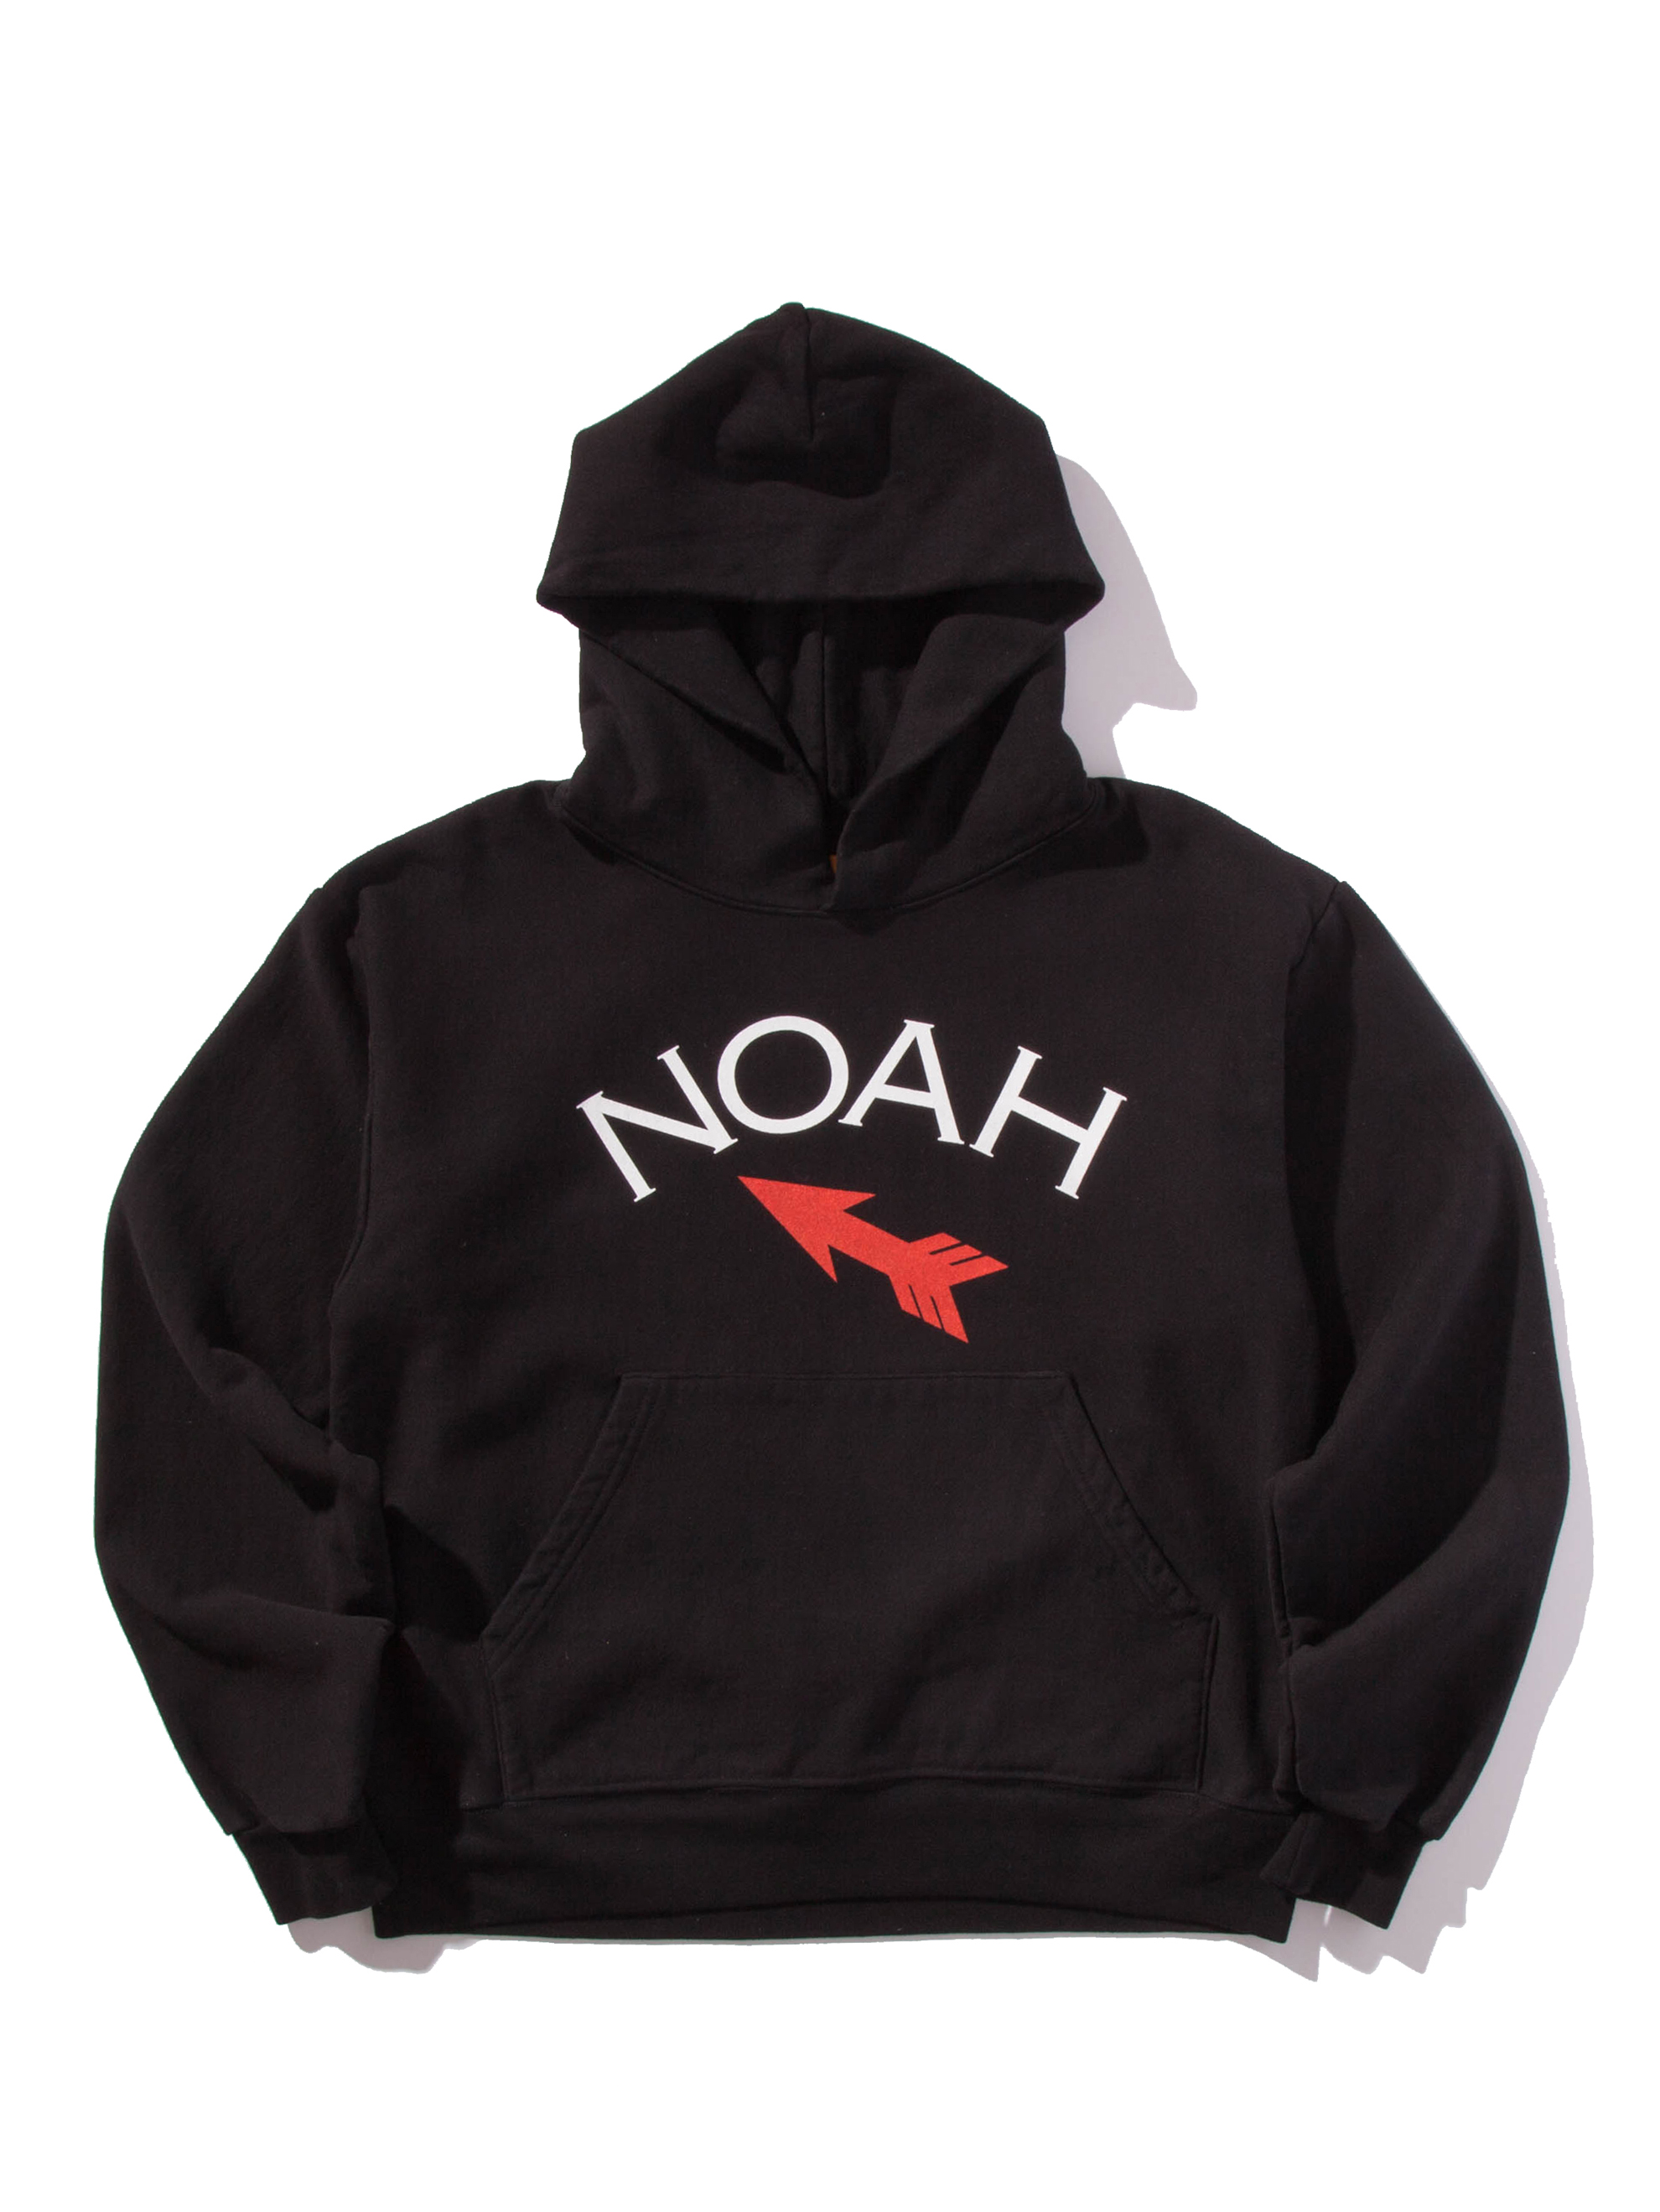 Noah x ComplexCon t shirt